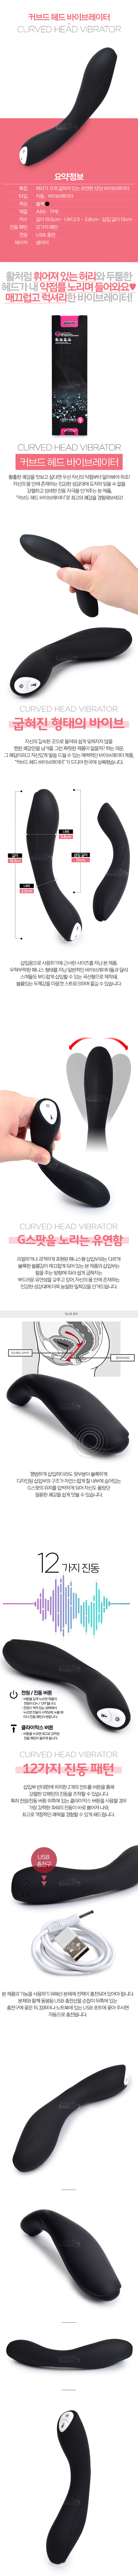 [12단 진동] 커브드 헤드 바이브레이터(Curved Head Vibrator)